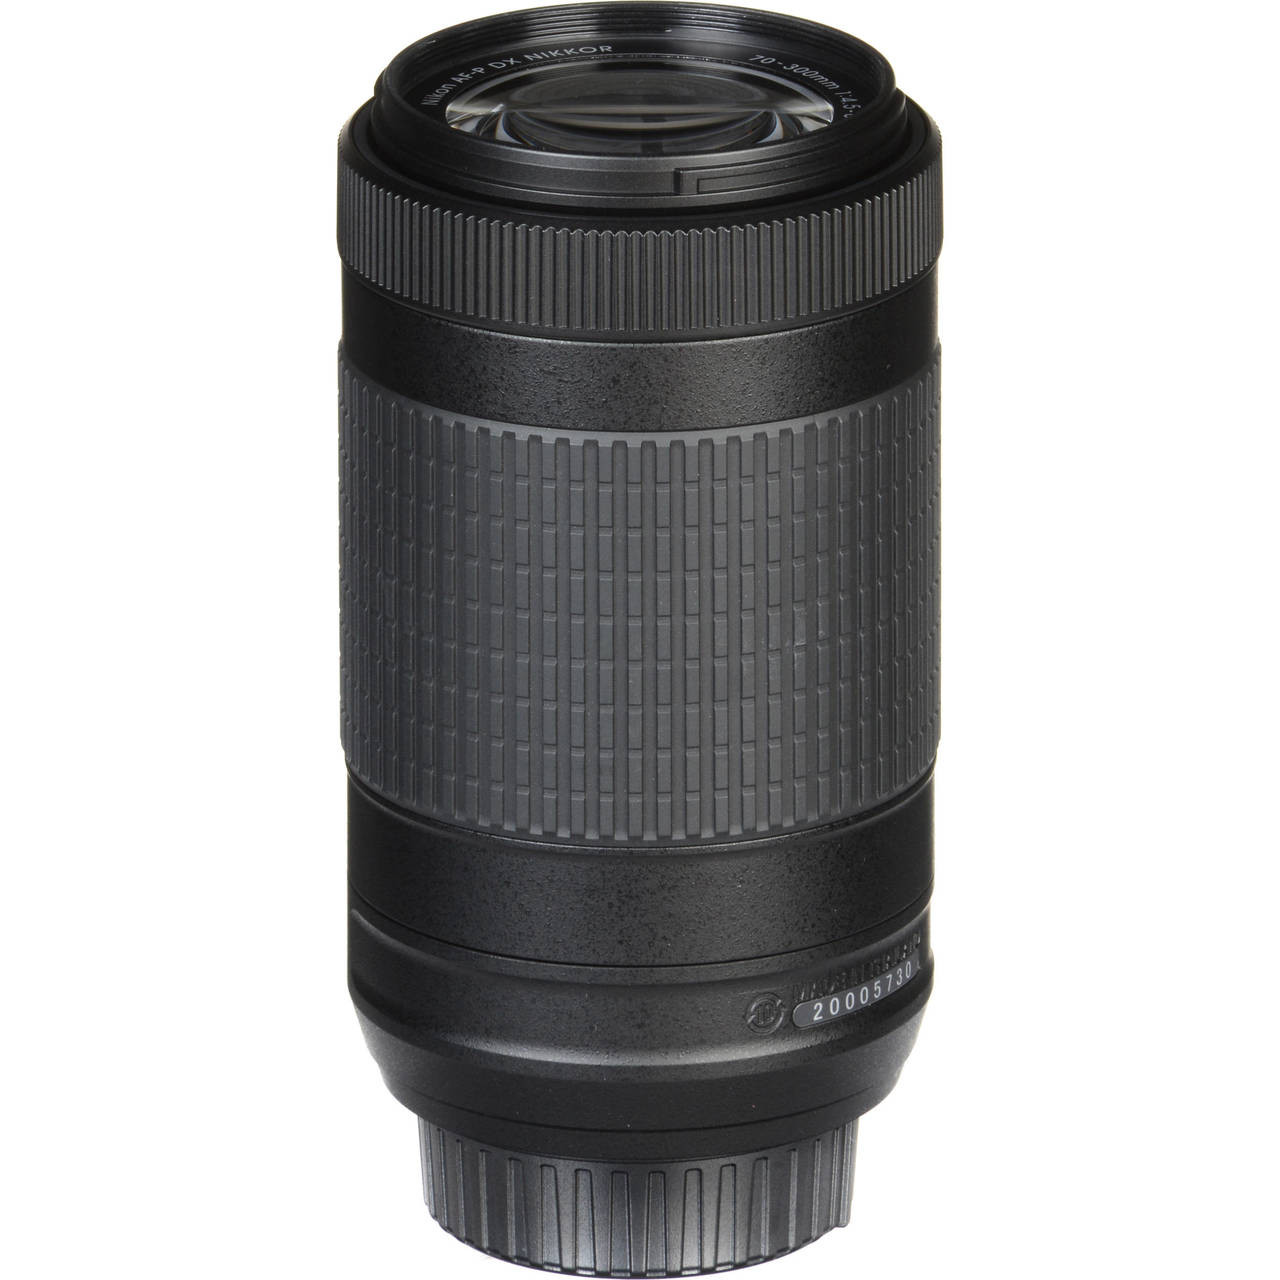 White Box Nikon AF-P DX NIKKOR 70-300mm f/4.5-6.3G ED Lens at